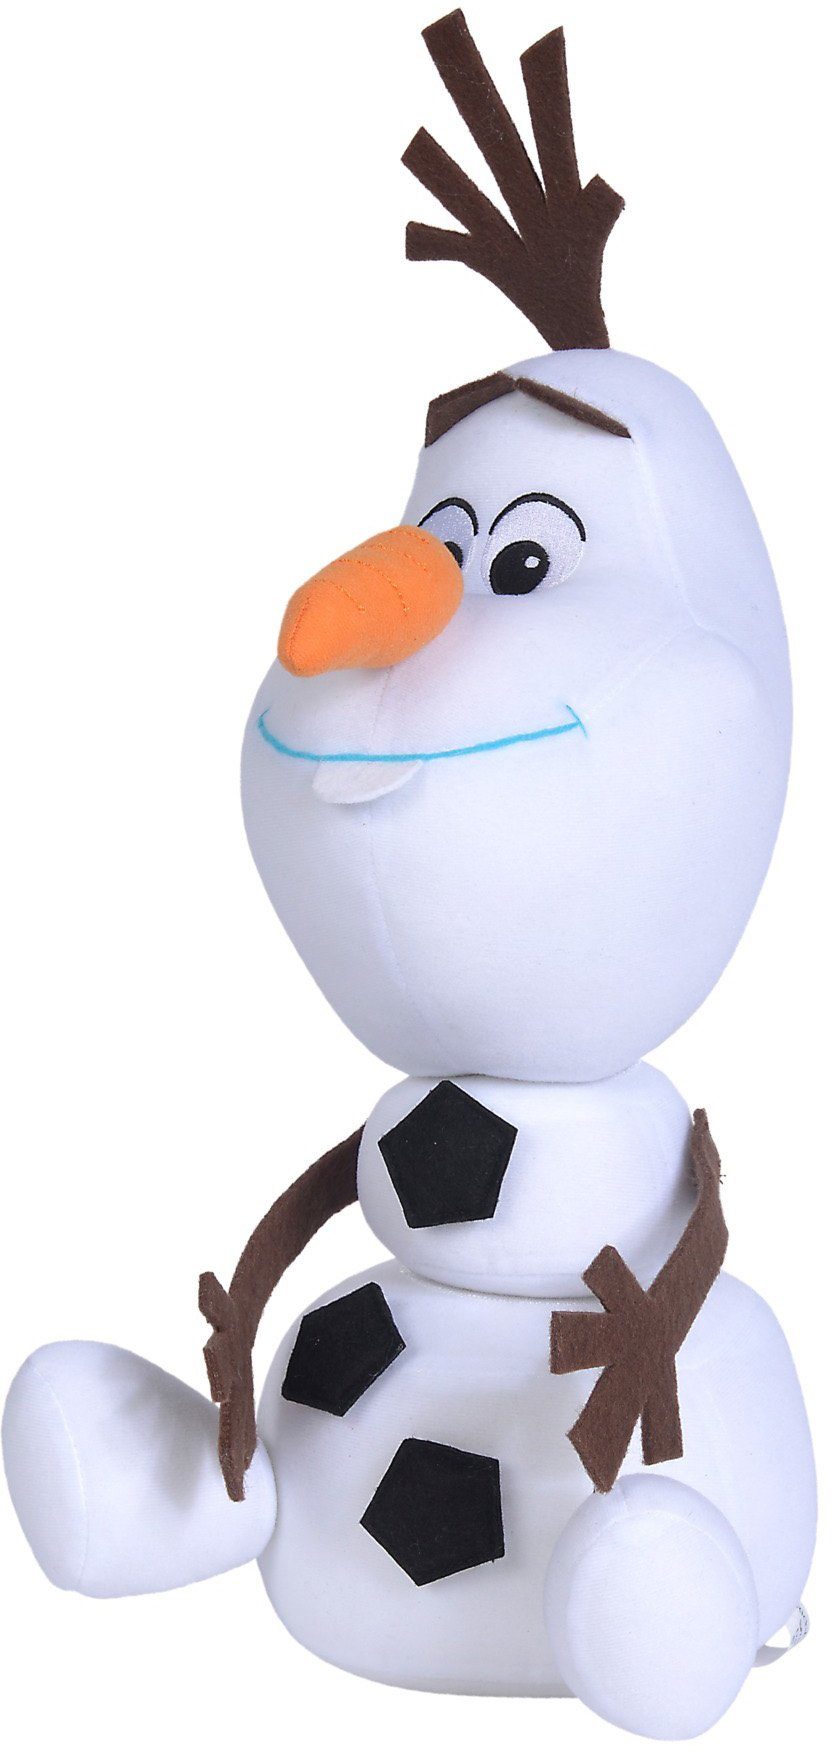 SIMBA Plüschfigur »Disney Frozen 2, Klett Olaf, 30 cm« online kaufen | OTTO